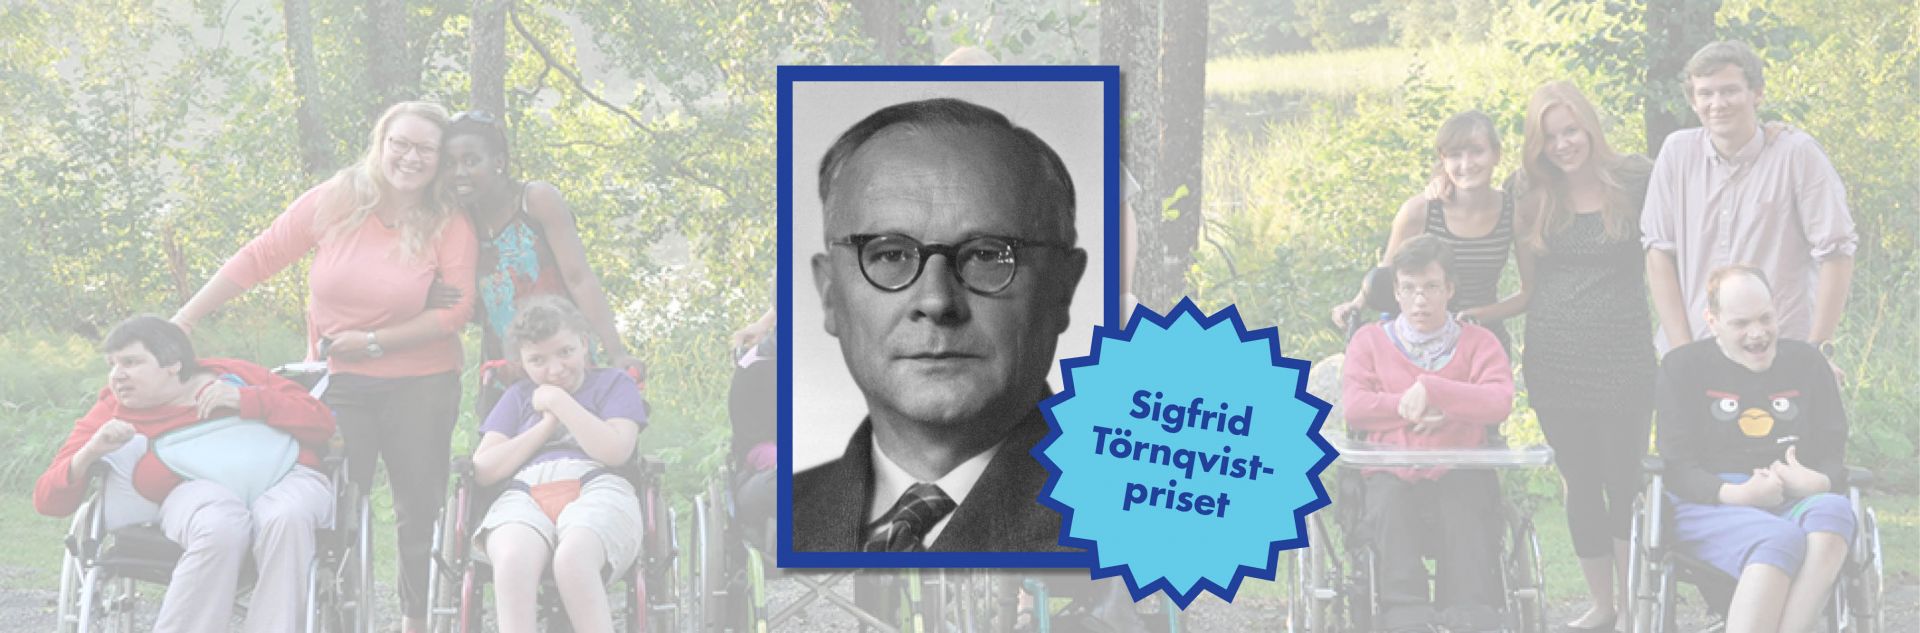 Porträtt på Sigfrid Törnqvist och emblem för priset samt i bakgrunden flera personer med funktionsnedsättning.